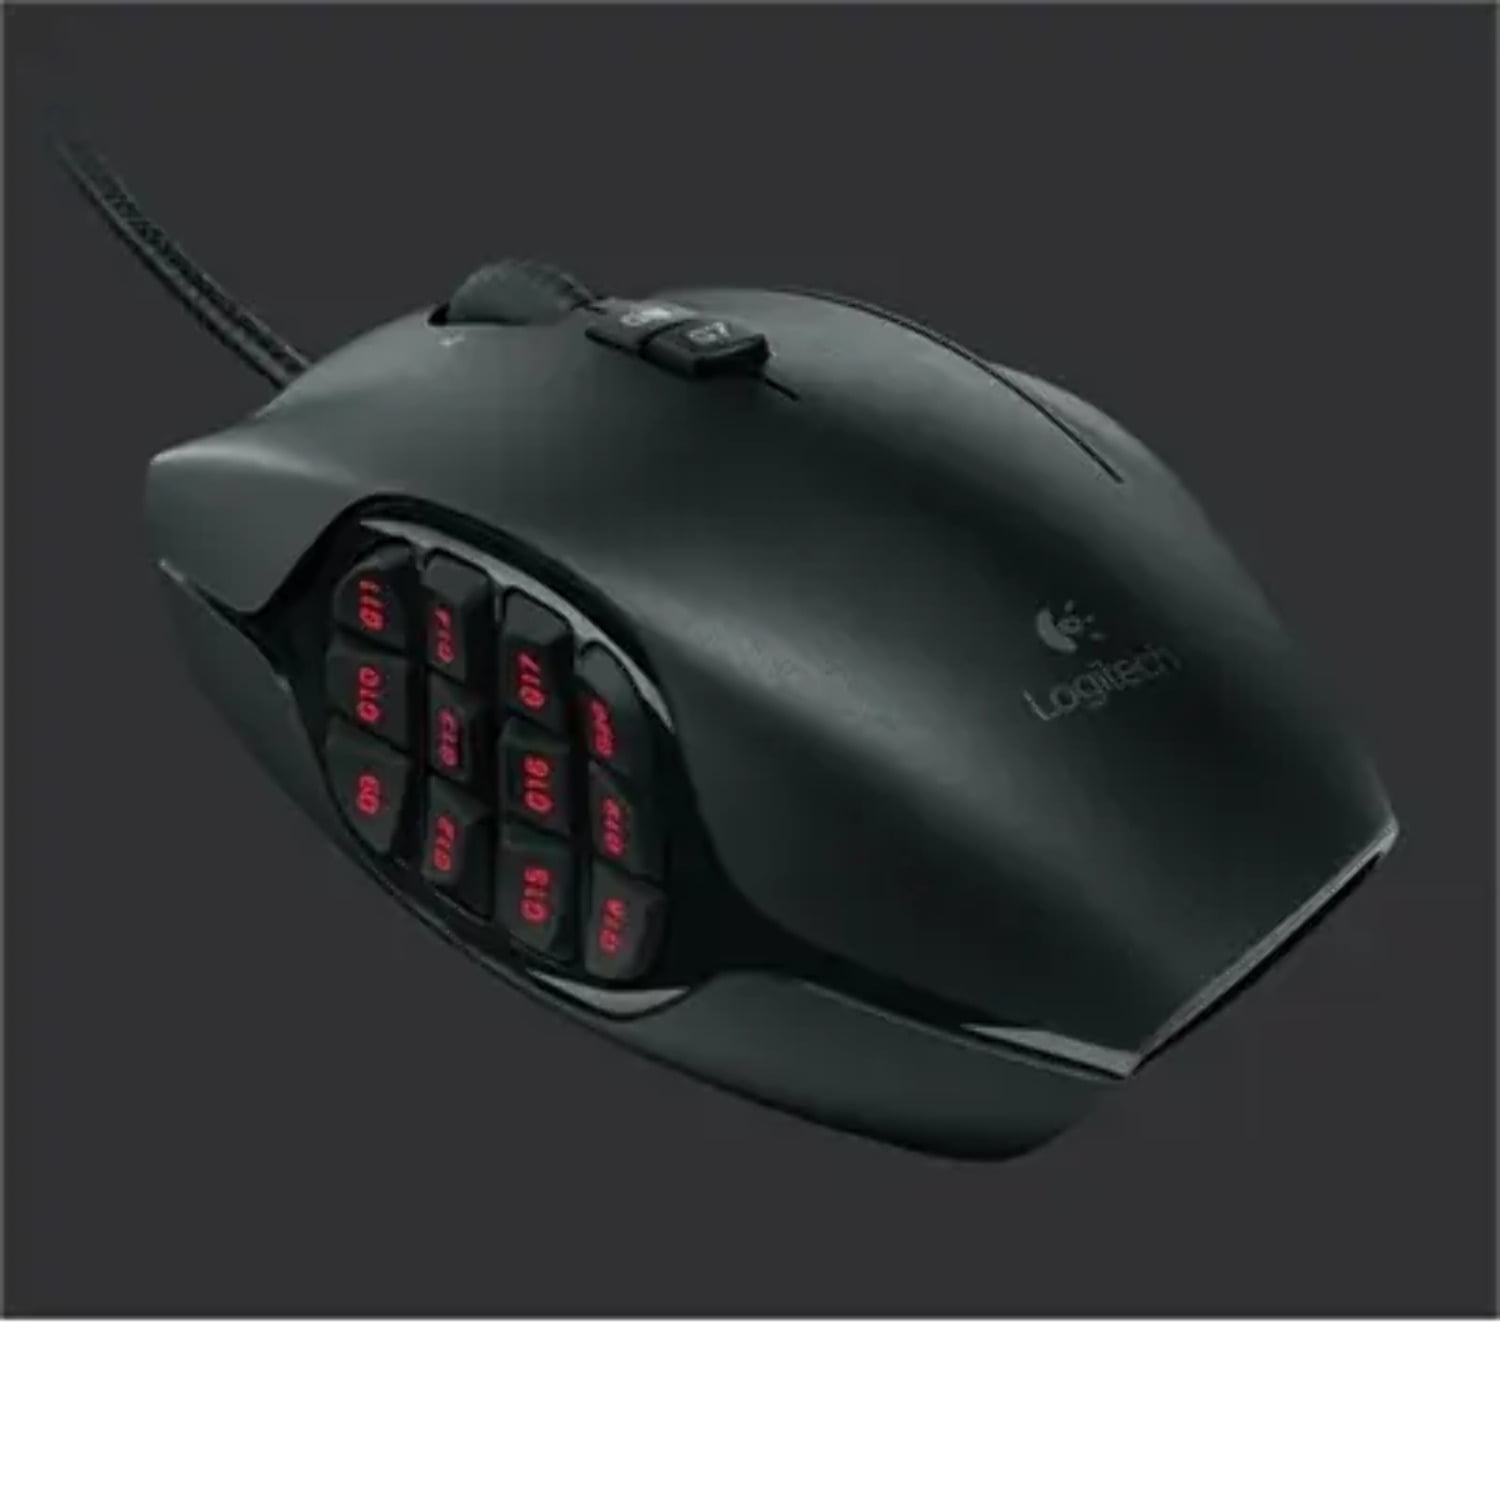 skyld Rekvisitter gennemsnit Logitech G600 MMO Gaming Mouse - Walmart.com